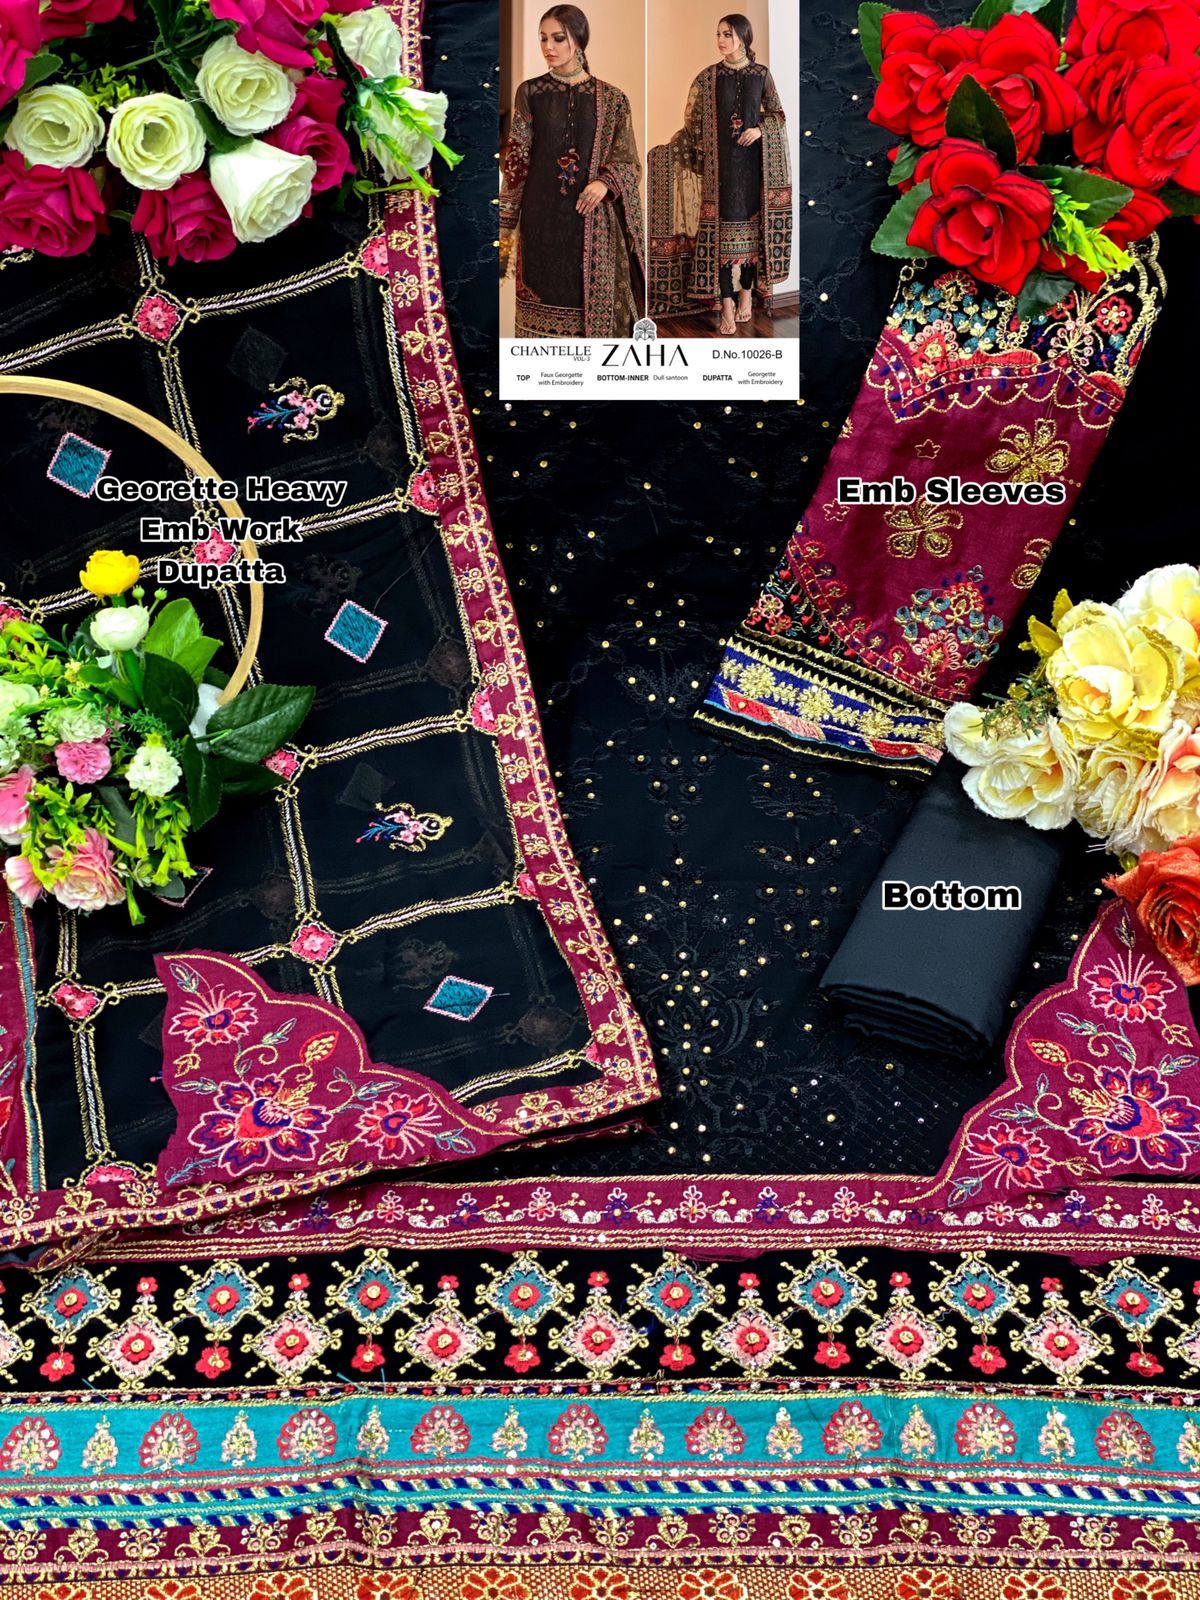 zaha chanterelle vol 3 colours georgette decent look salwar suit catalog